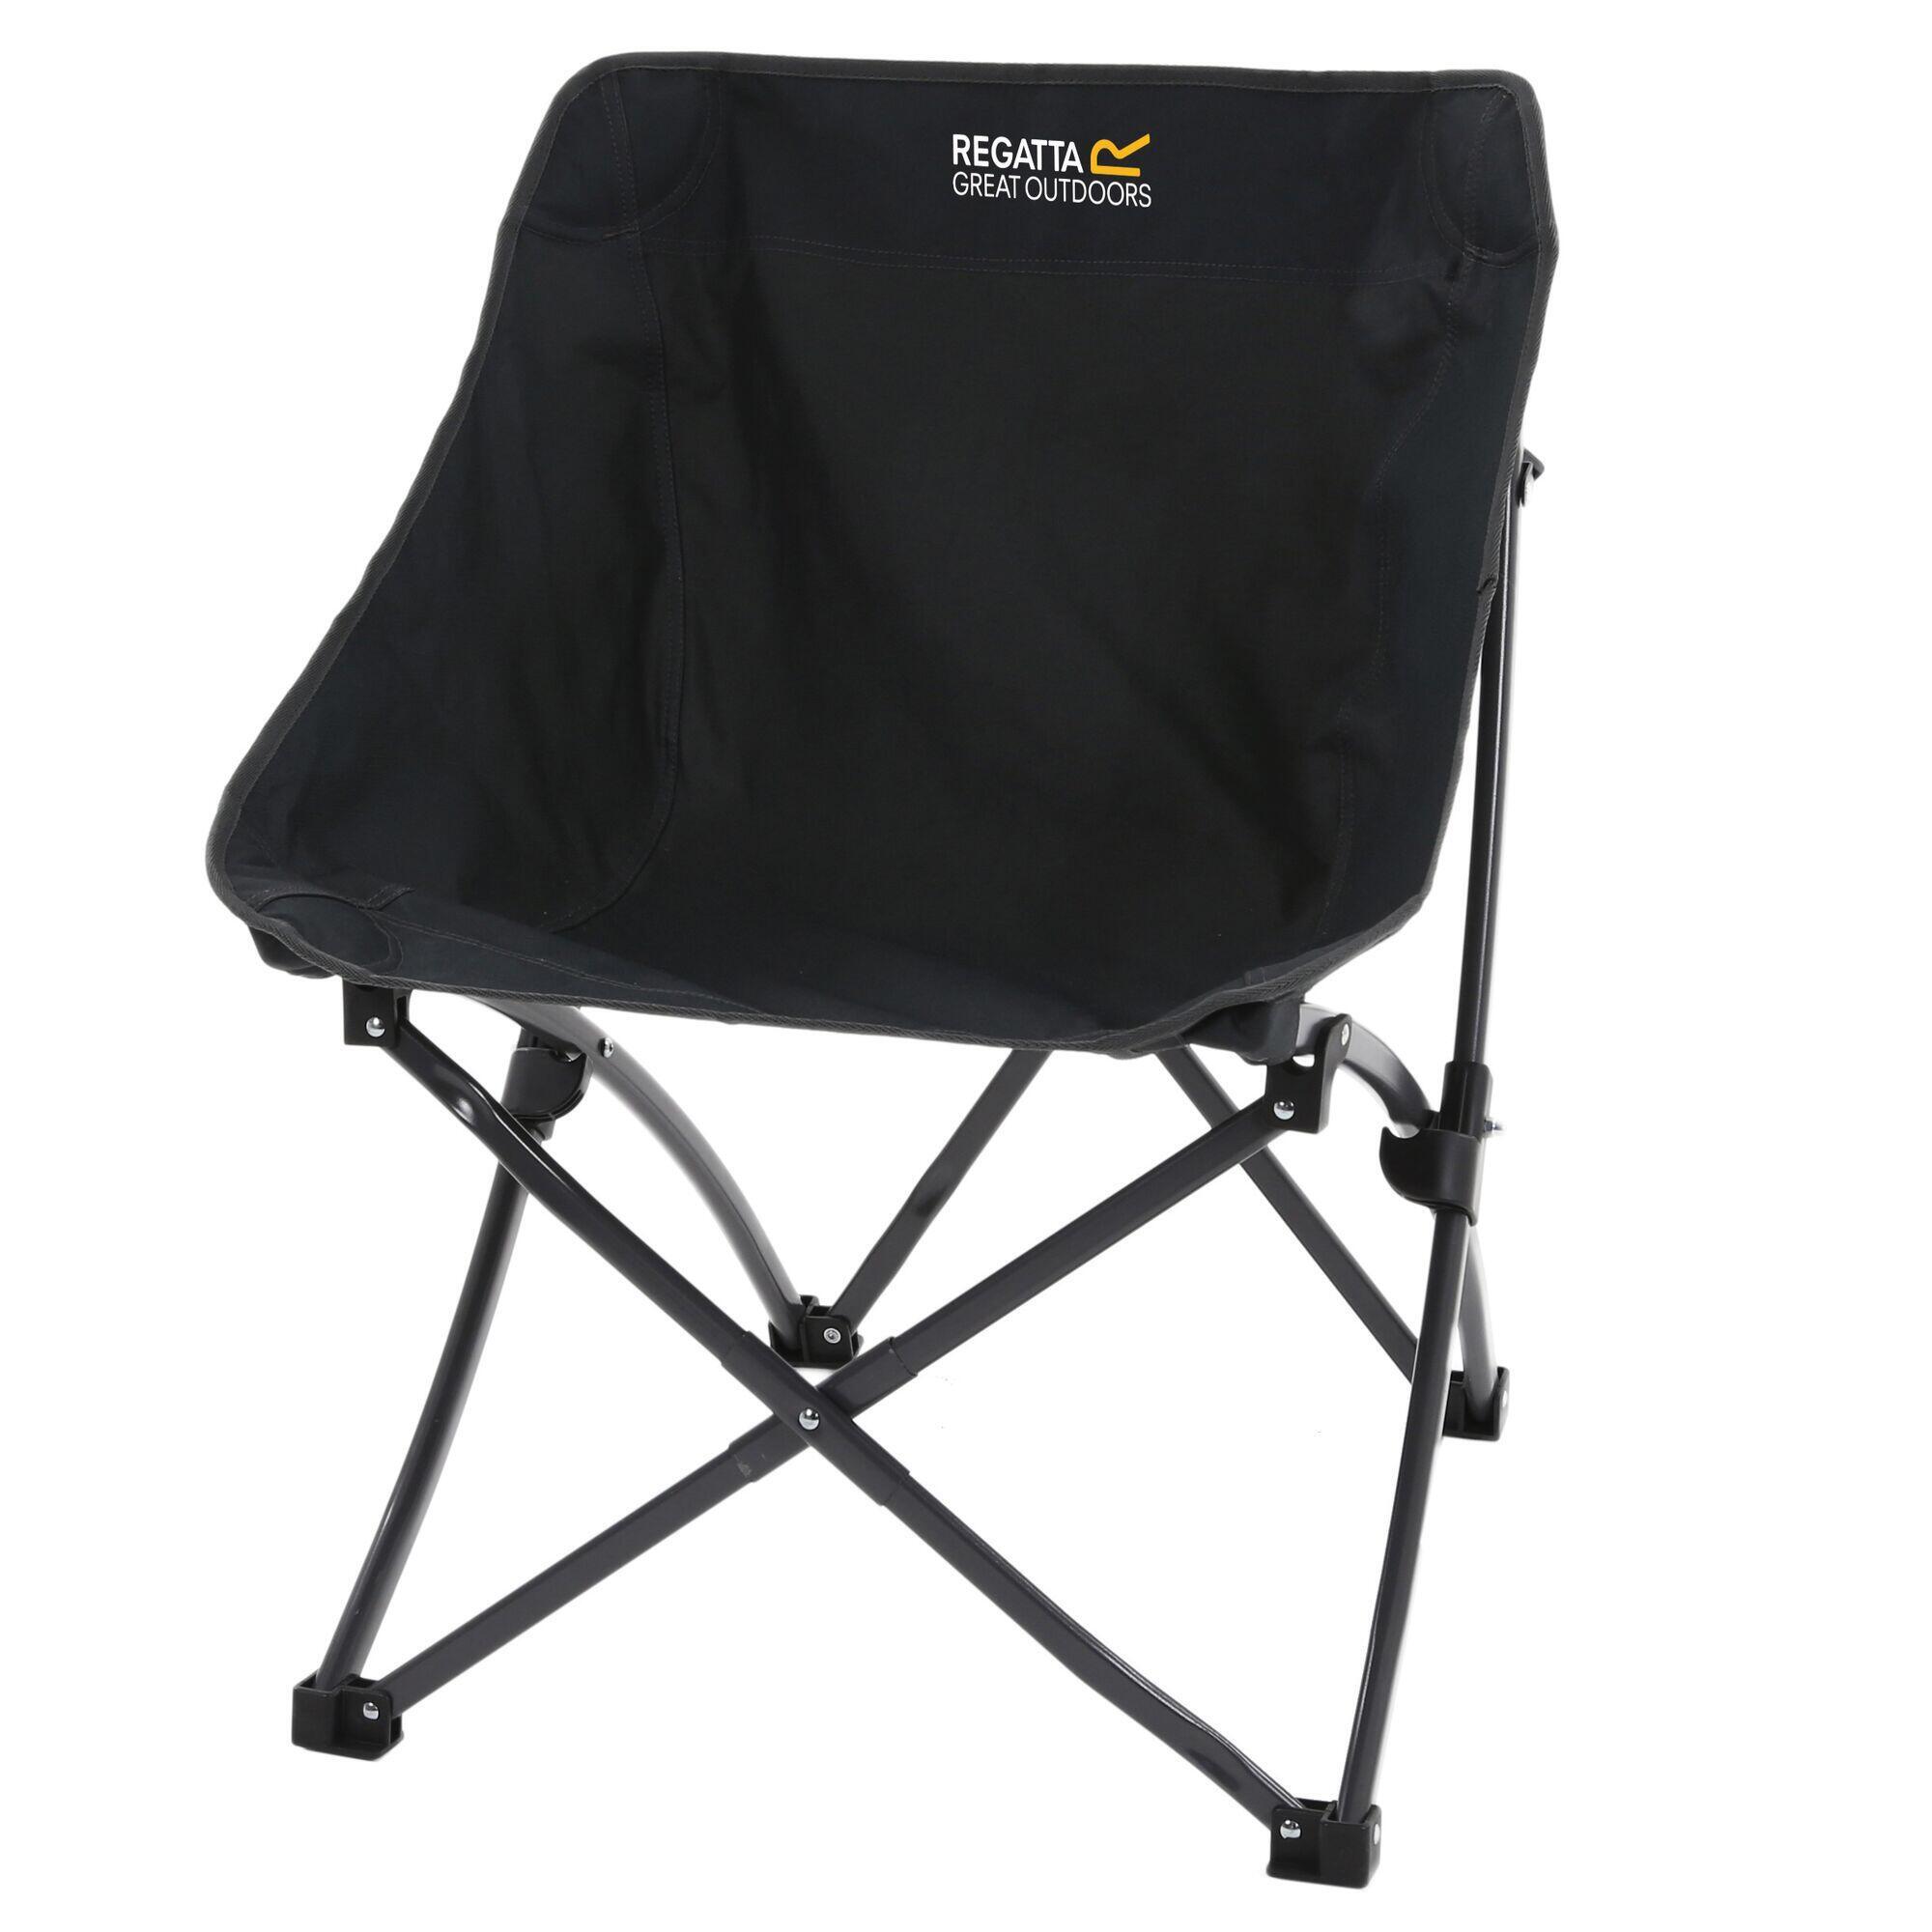 Стул складной Regatta Forza Pro Adult для кемпинга, черный уличный складной стул портативный складной стул moon chair откидной стул оборудование для кемпинга складной стул maza рыбалка